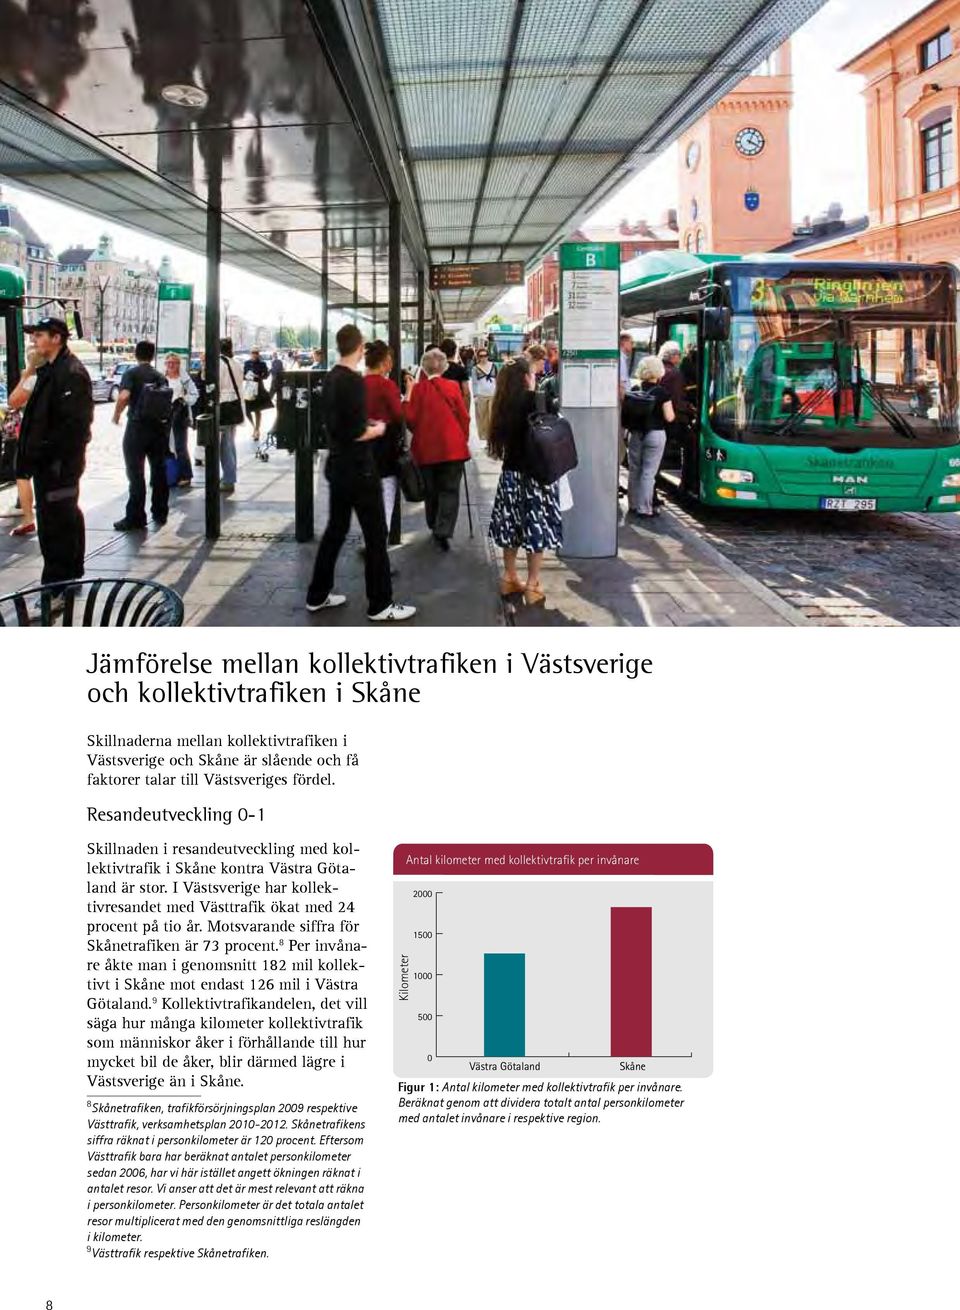 Motsvarande siffra för Skånetrafiken är 73 procent. 8 Per invånare åkte man i genomsnitt 182 mil kollektivt i Skåne mot endast 126 mil i Västra Götaland.